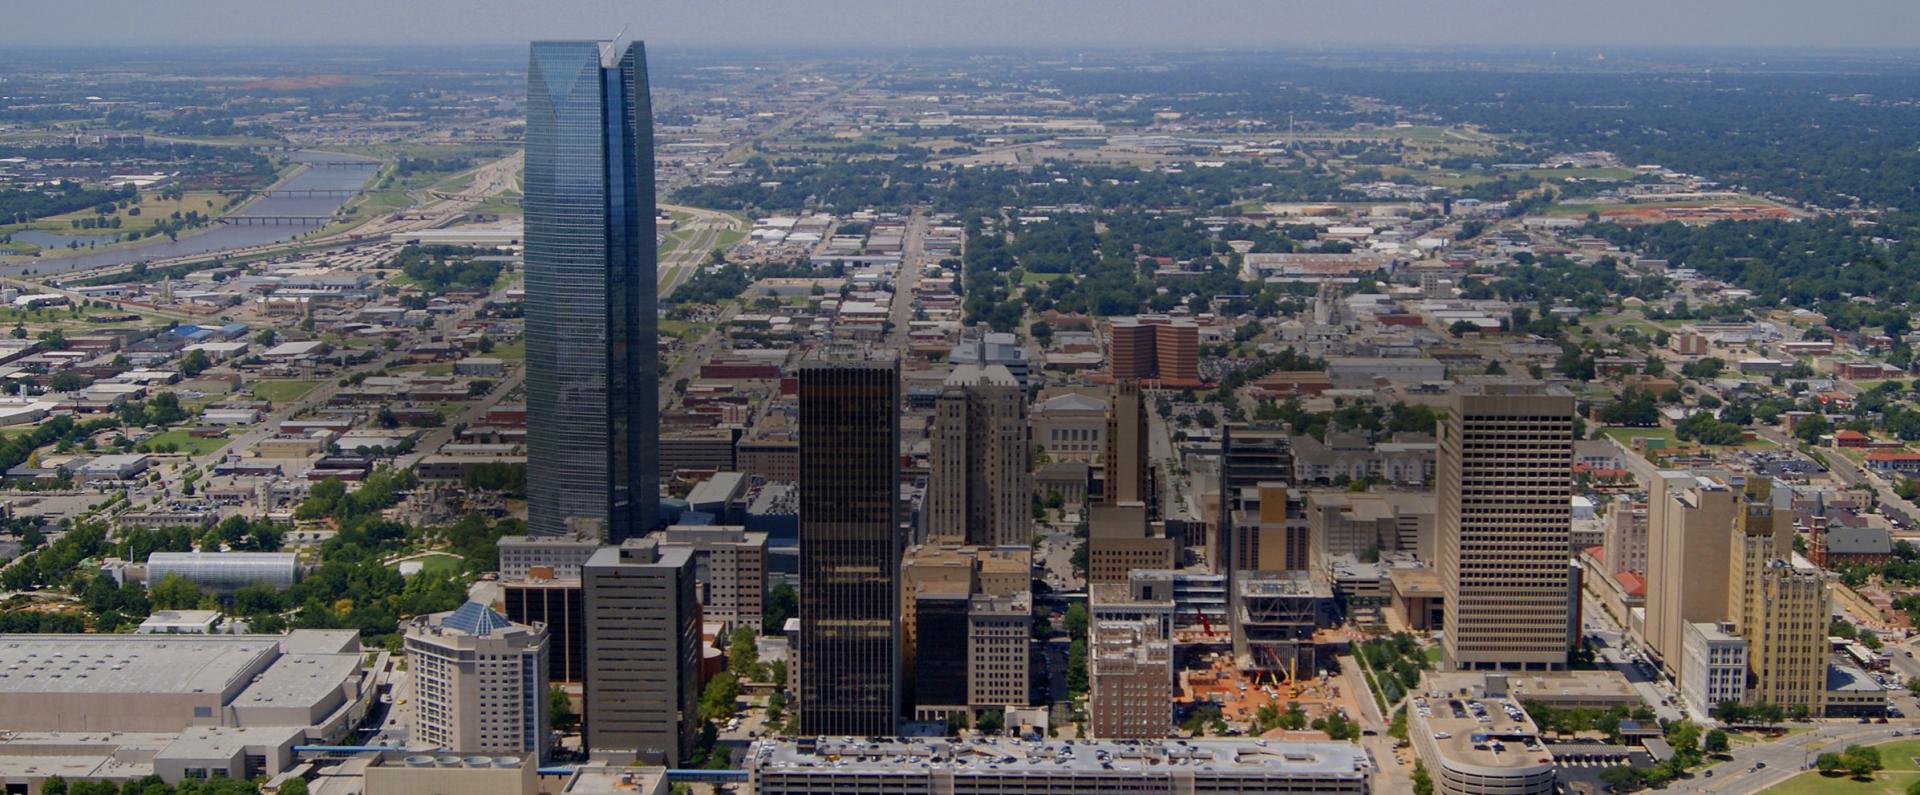 aerial skyline view of Oklahoma City